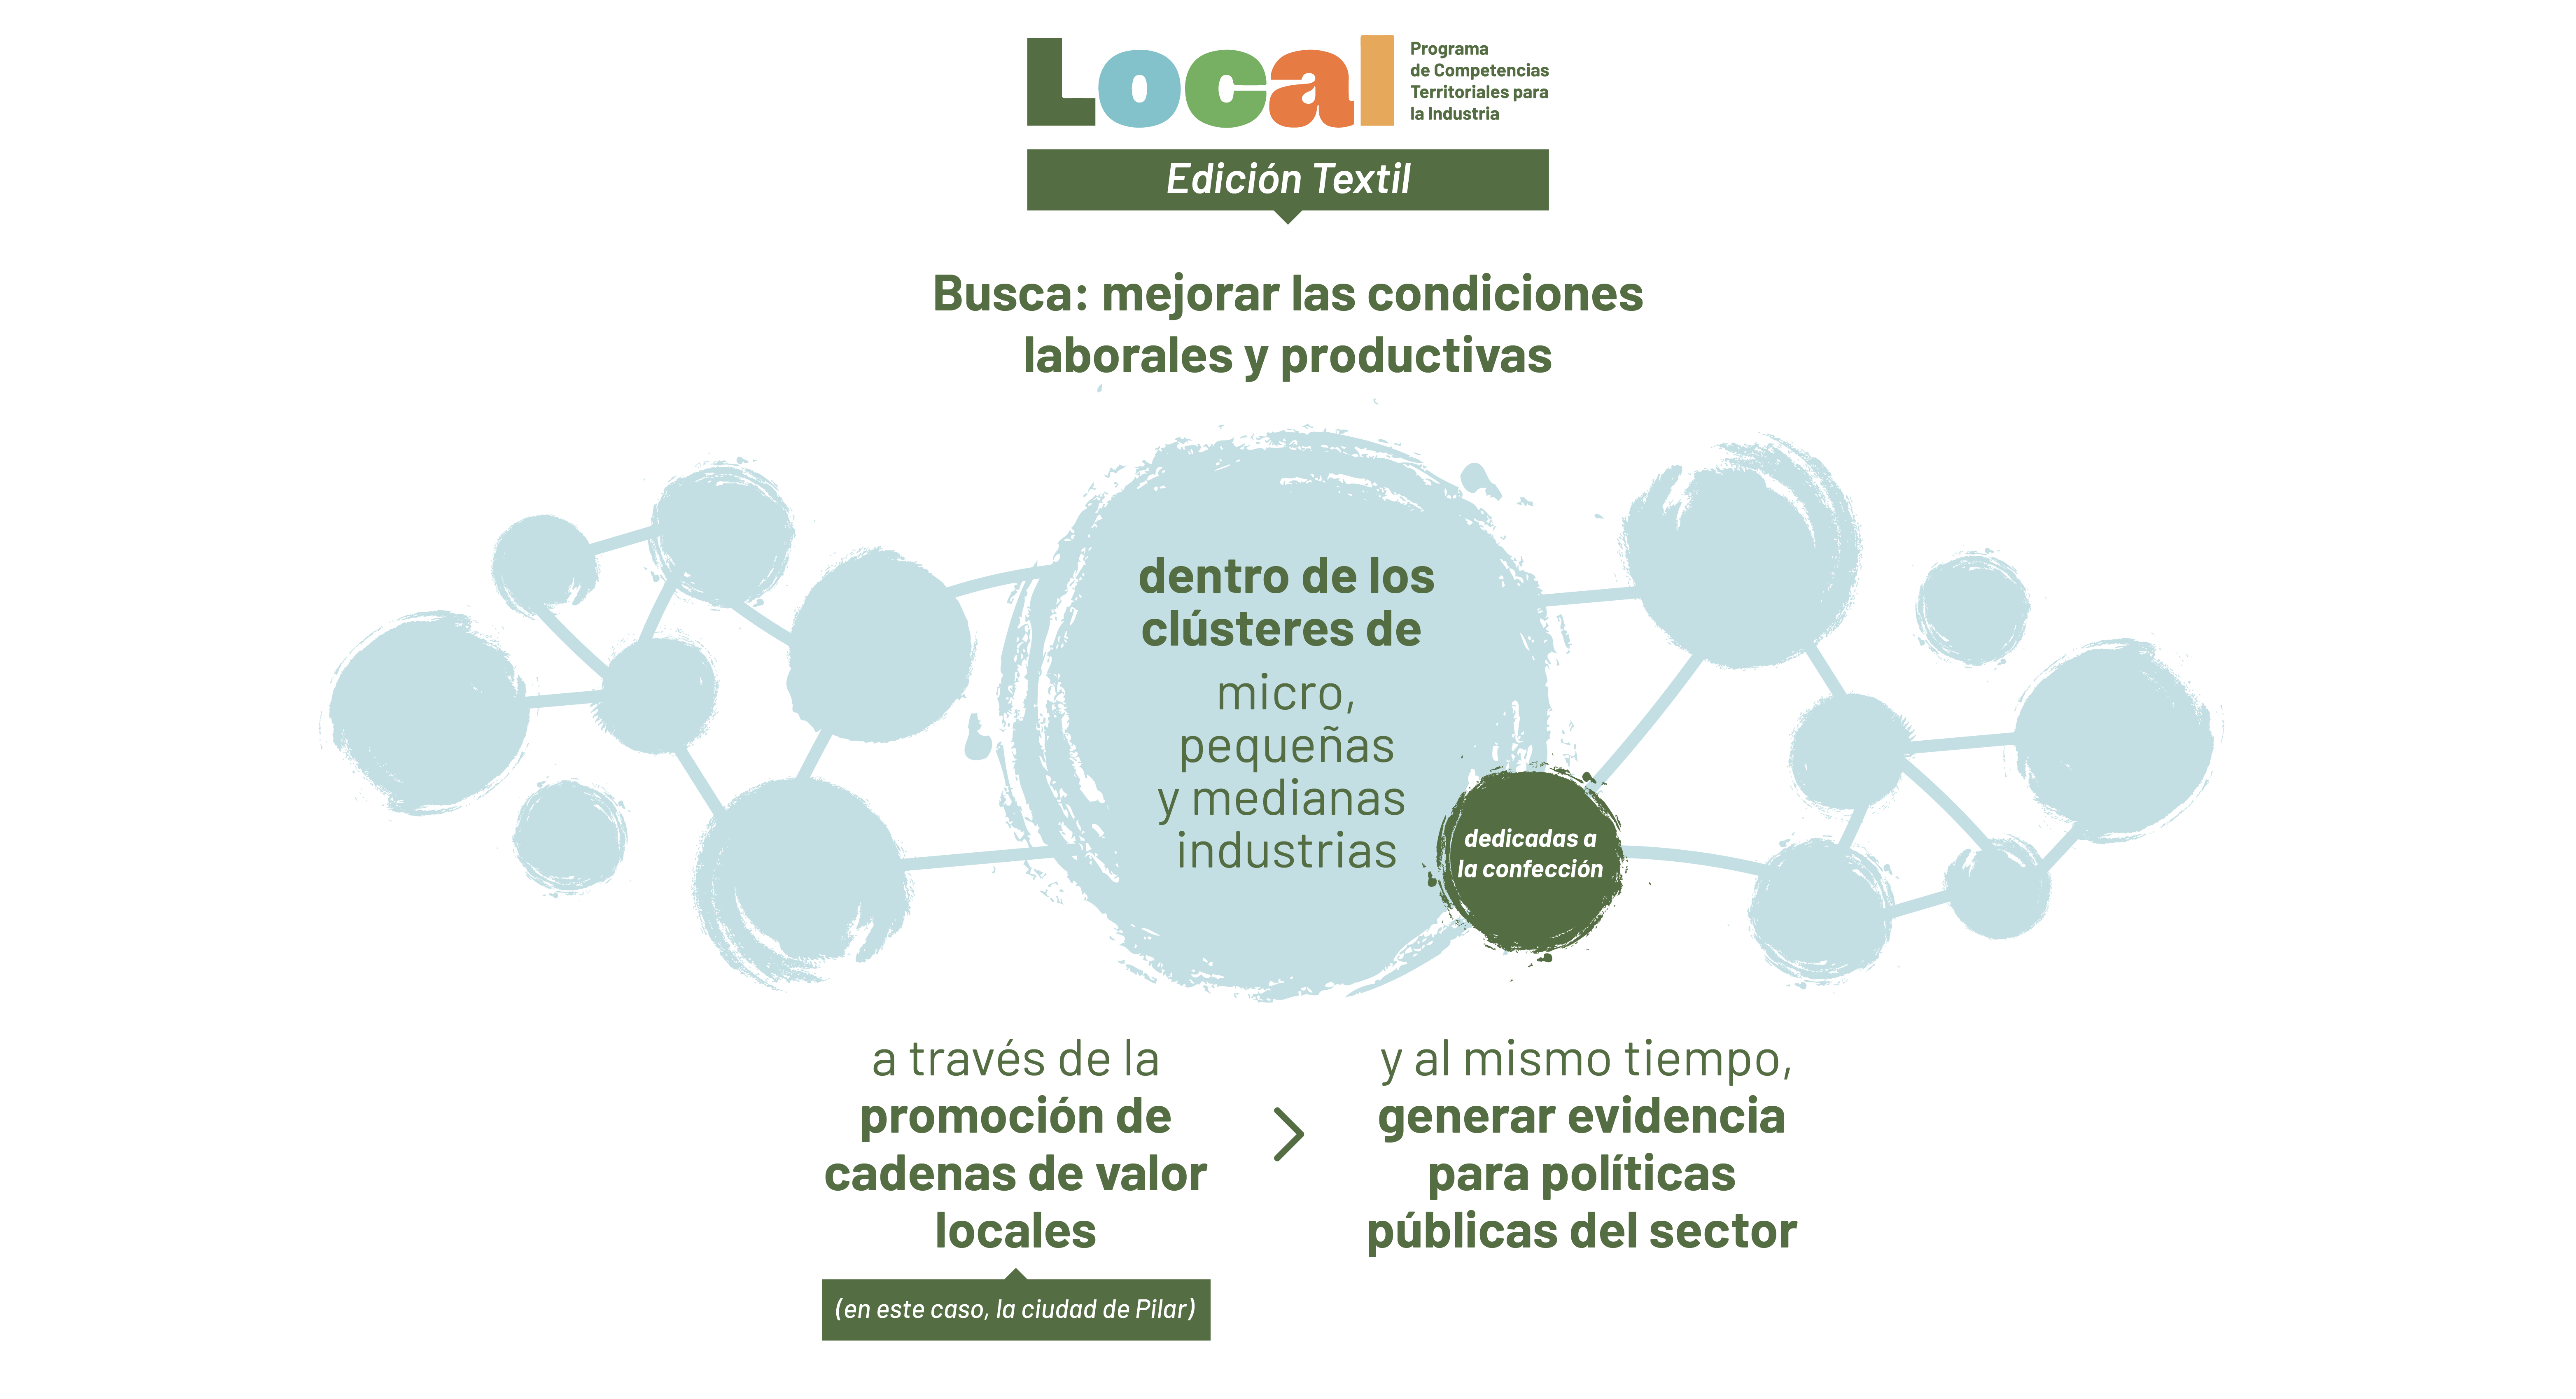 Local. Programa de competencias territoriales para la industria